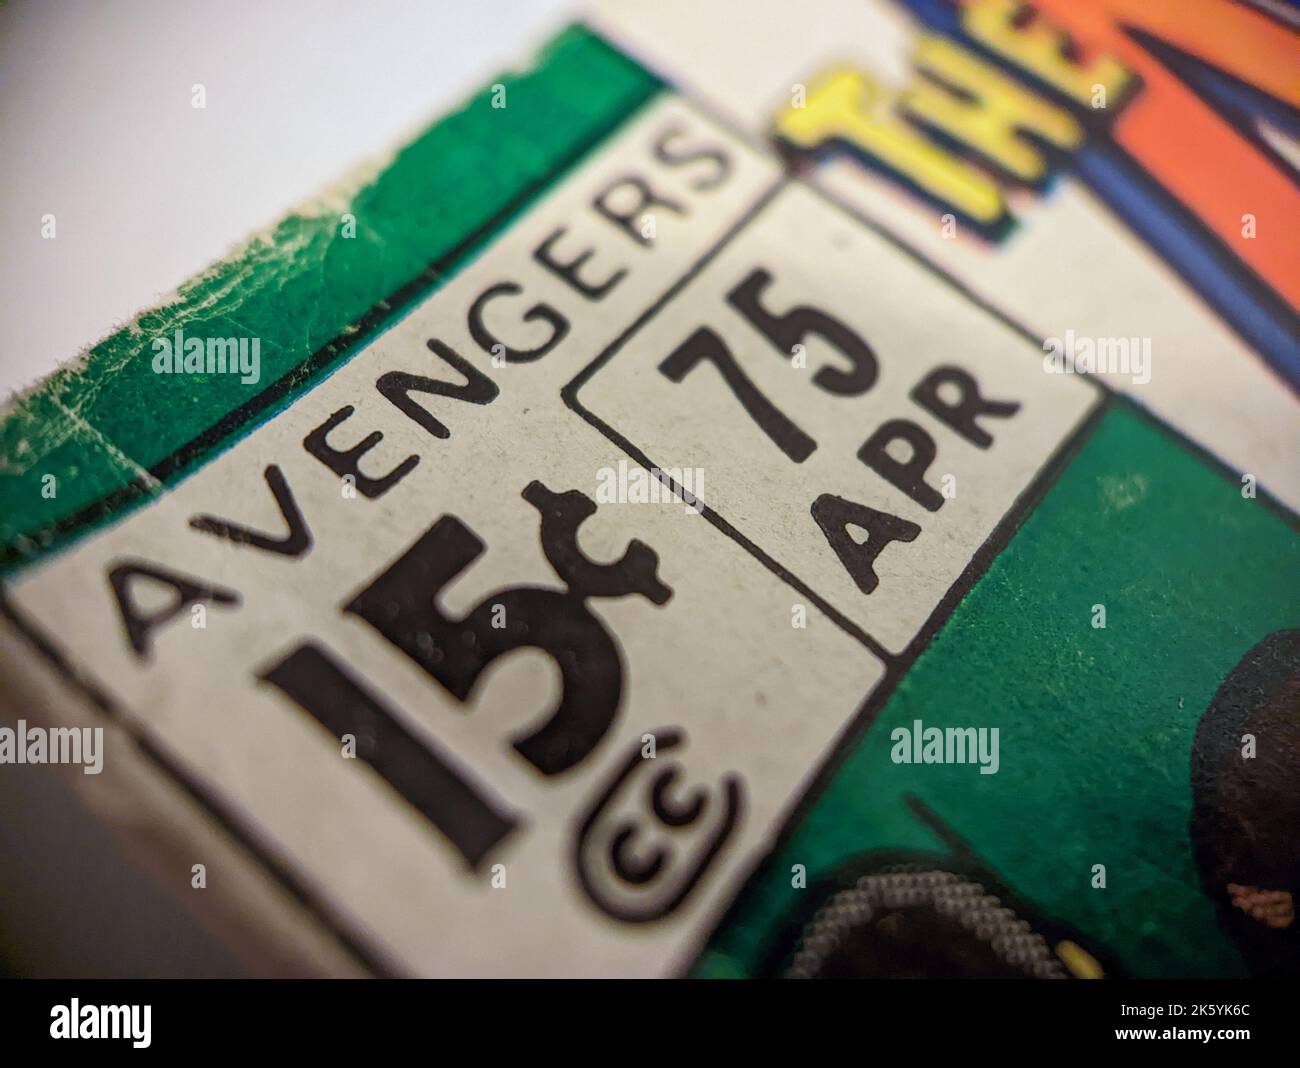 New York City, États-Unis - octobre 2022 : un gros plan du livre de bande dessinée nº 75 de Marvel Avengers, vendu à l'origine pour 15 cents, est présenté dans un o Banque D'Images